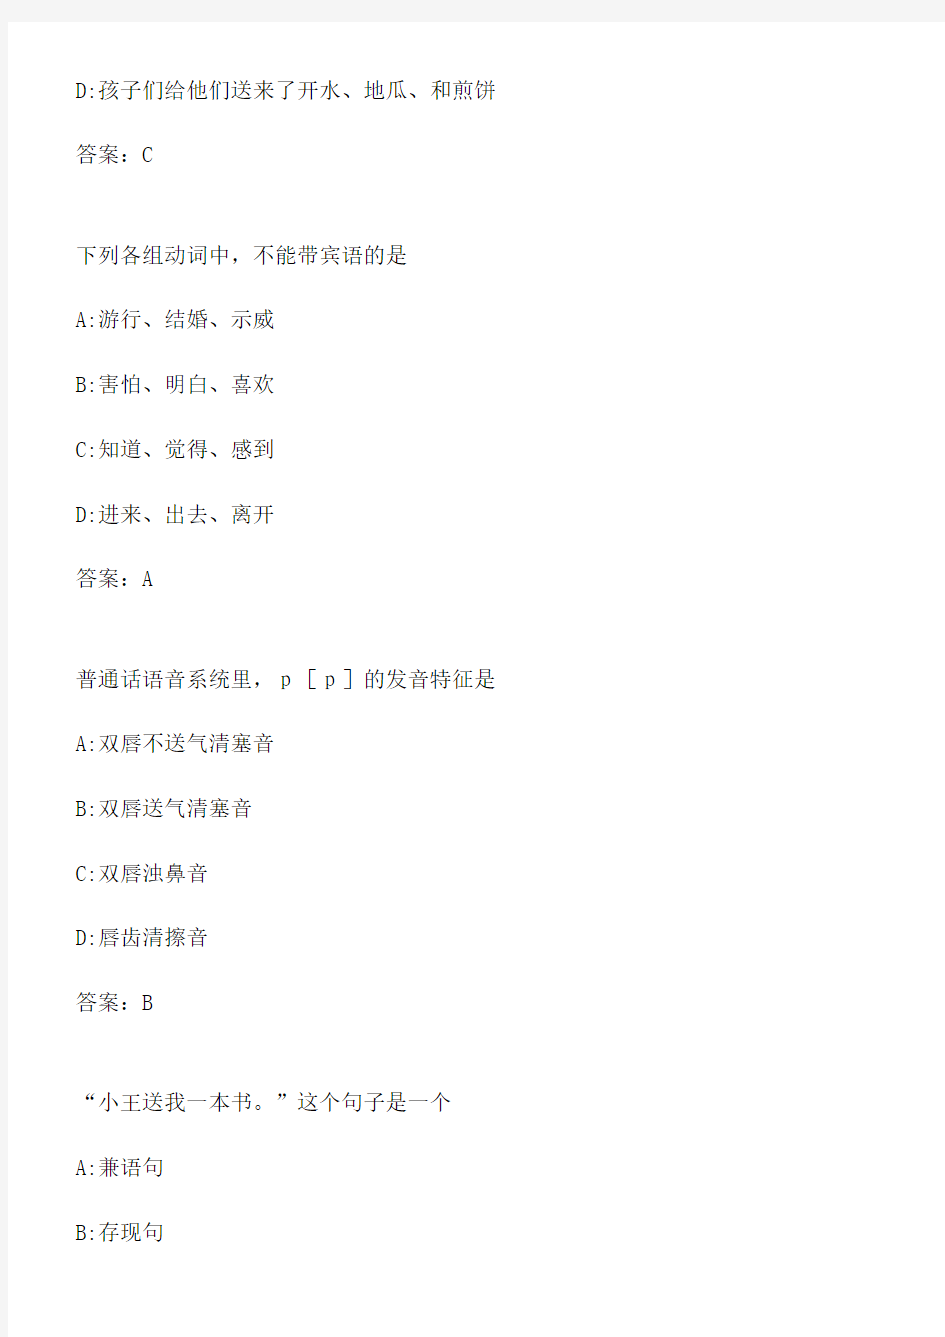 华师《现代汉语》在线作业-0005.4EBD7FDE-D133-48